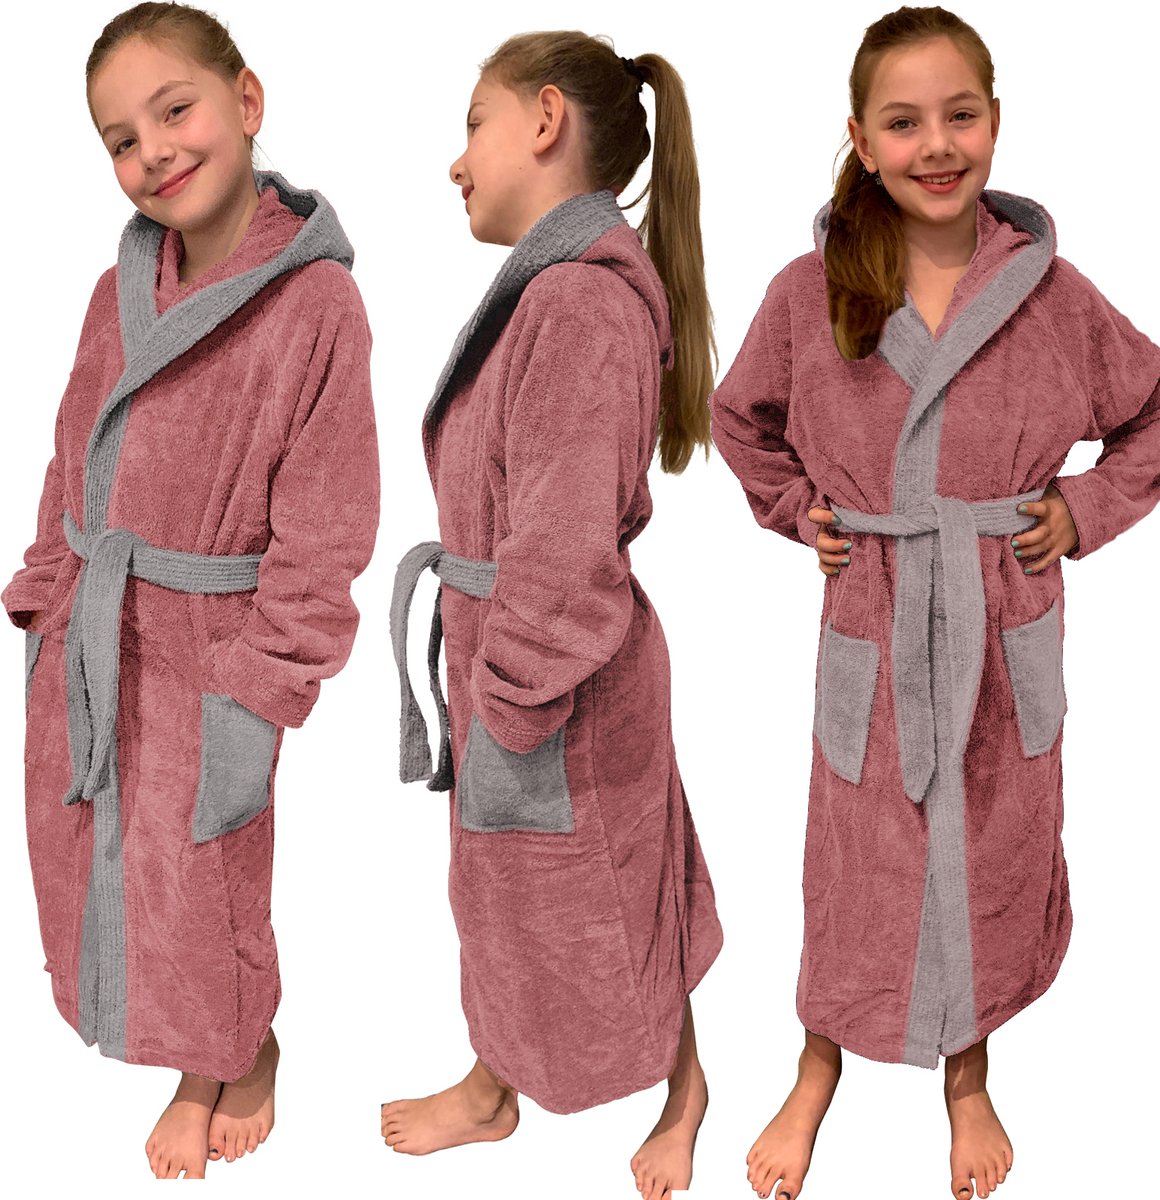 HOMELEVEL Badstof badjas voor kinderen 100% katoen voor meisjes en jongens Roze Maat 164